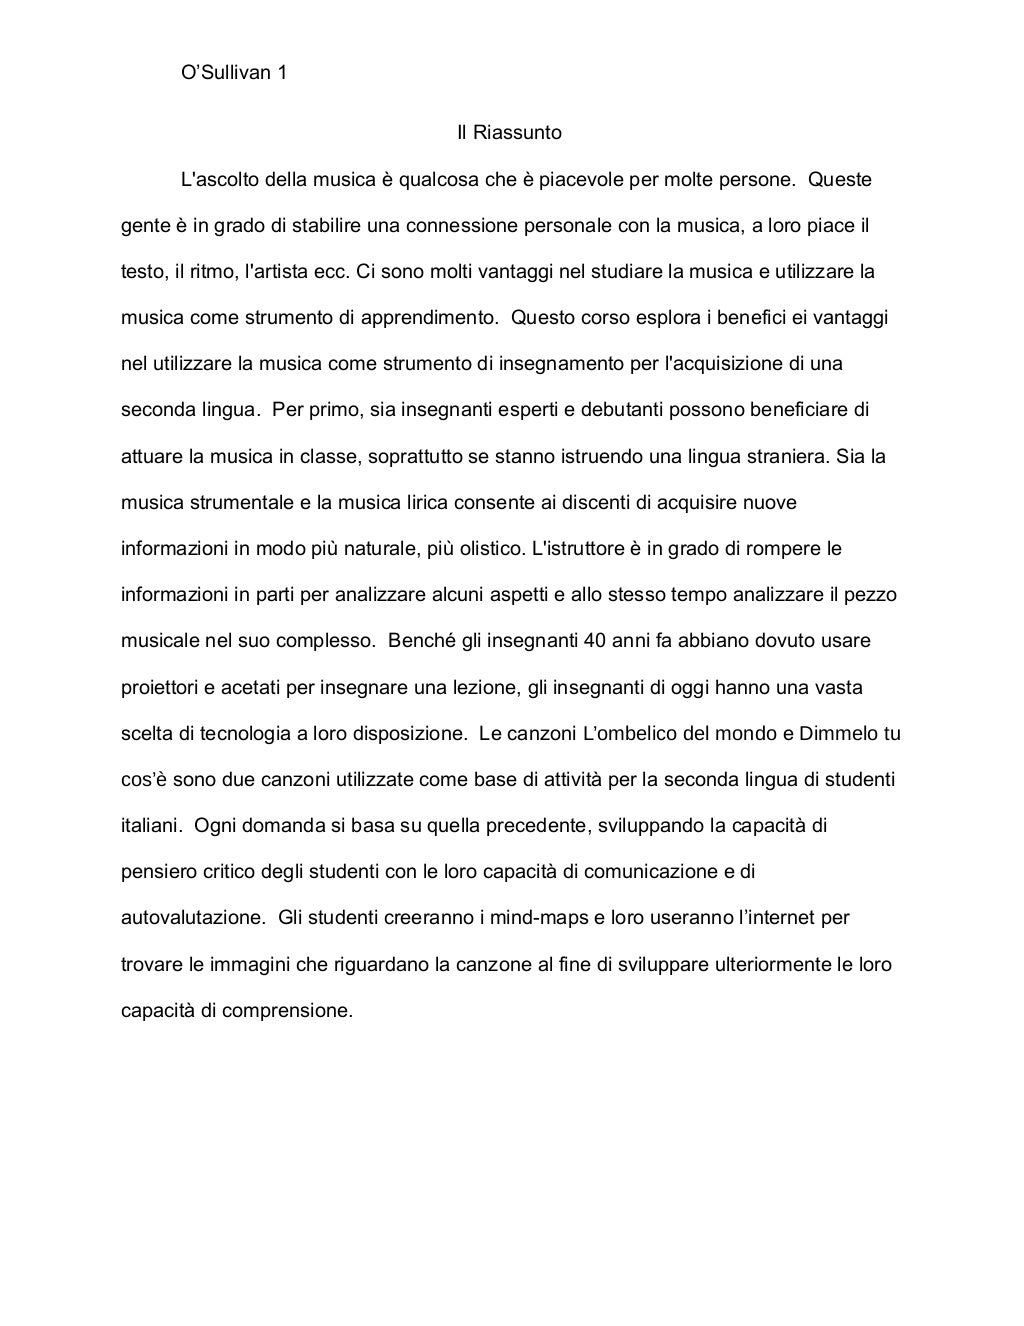 final dissertation in italiano